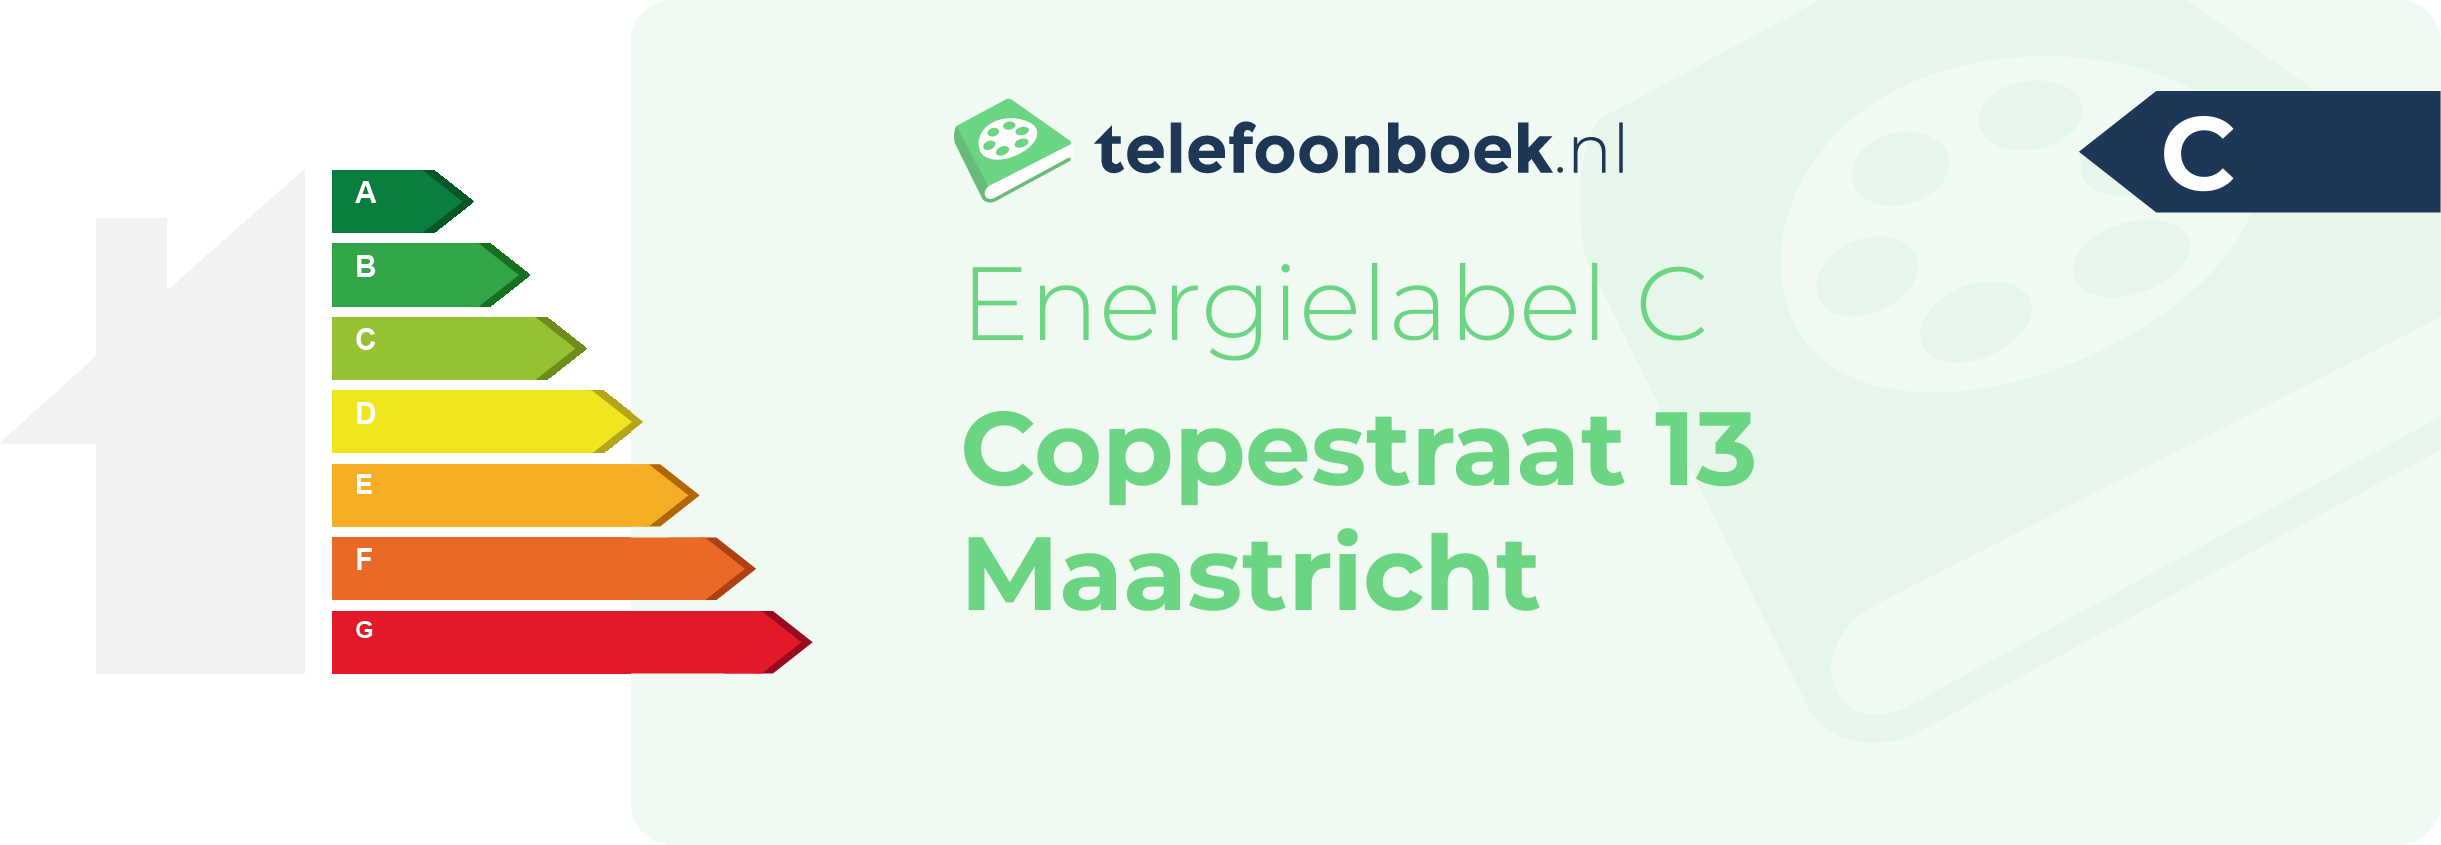 Energielabel Coppestraat 13 Maastricht